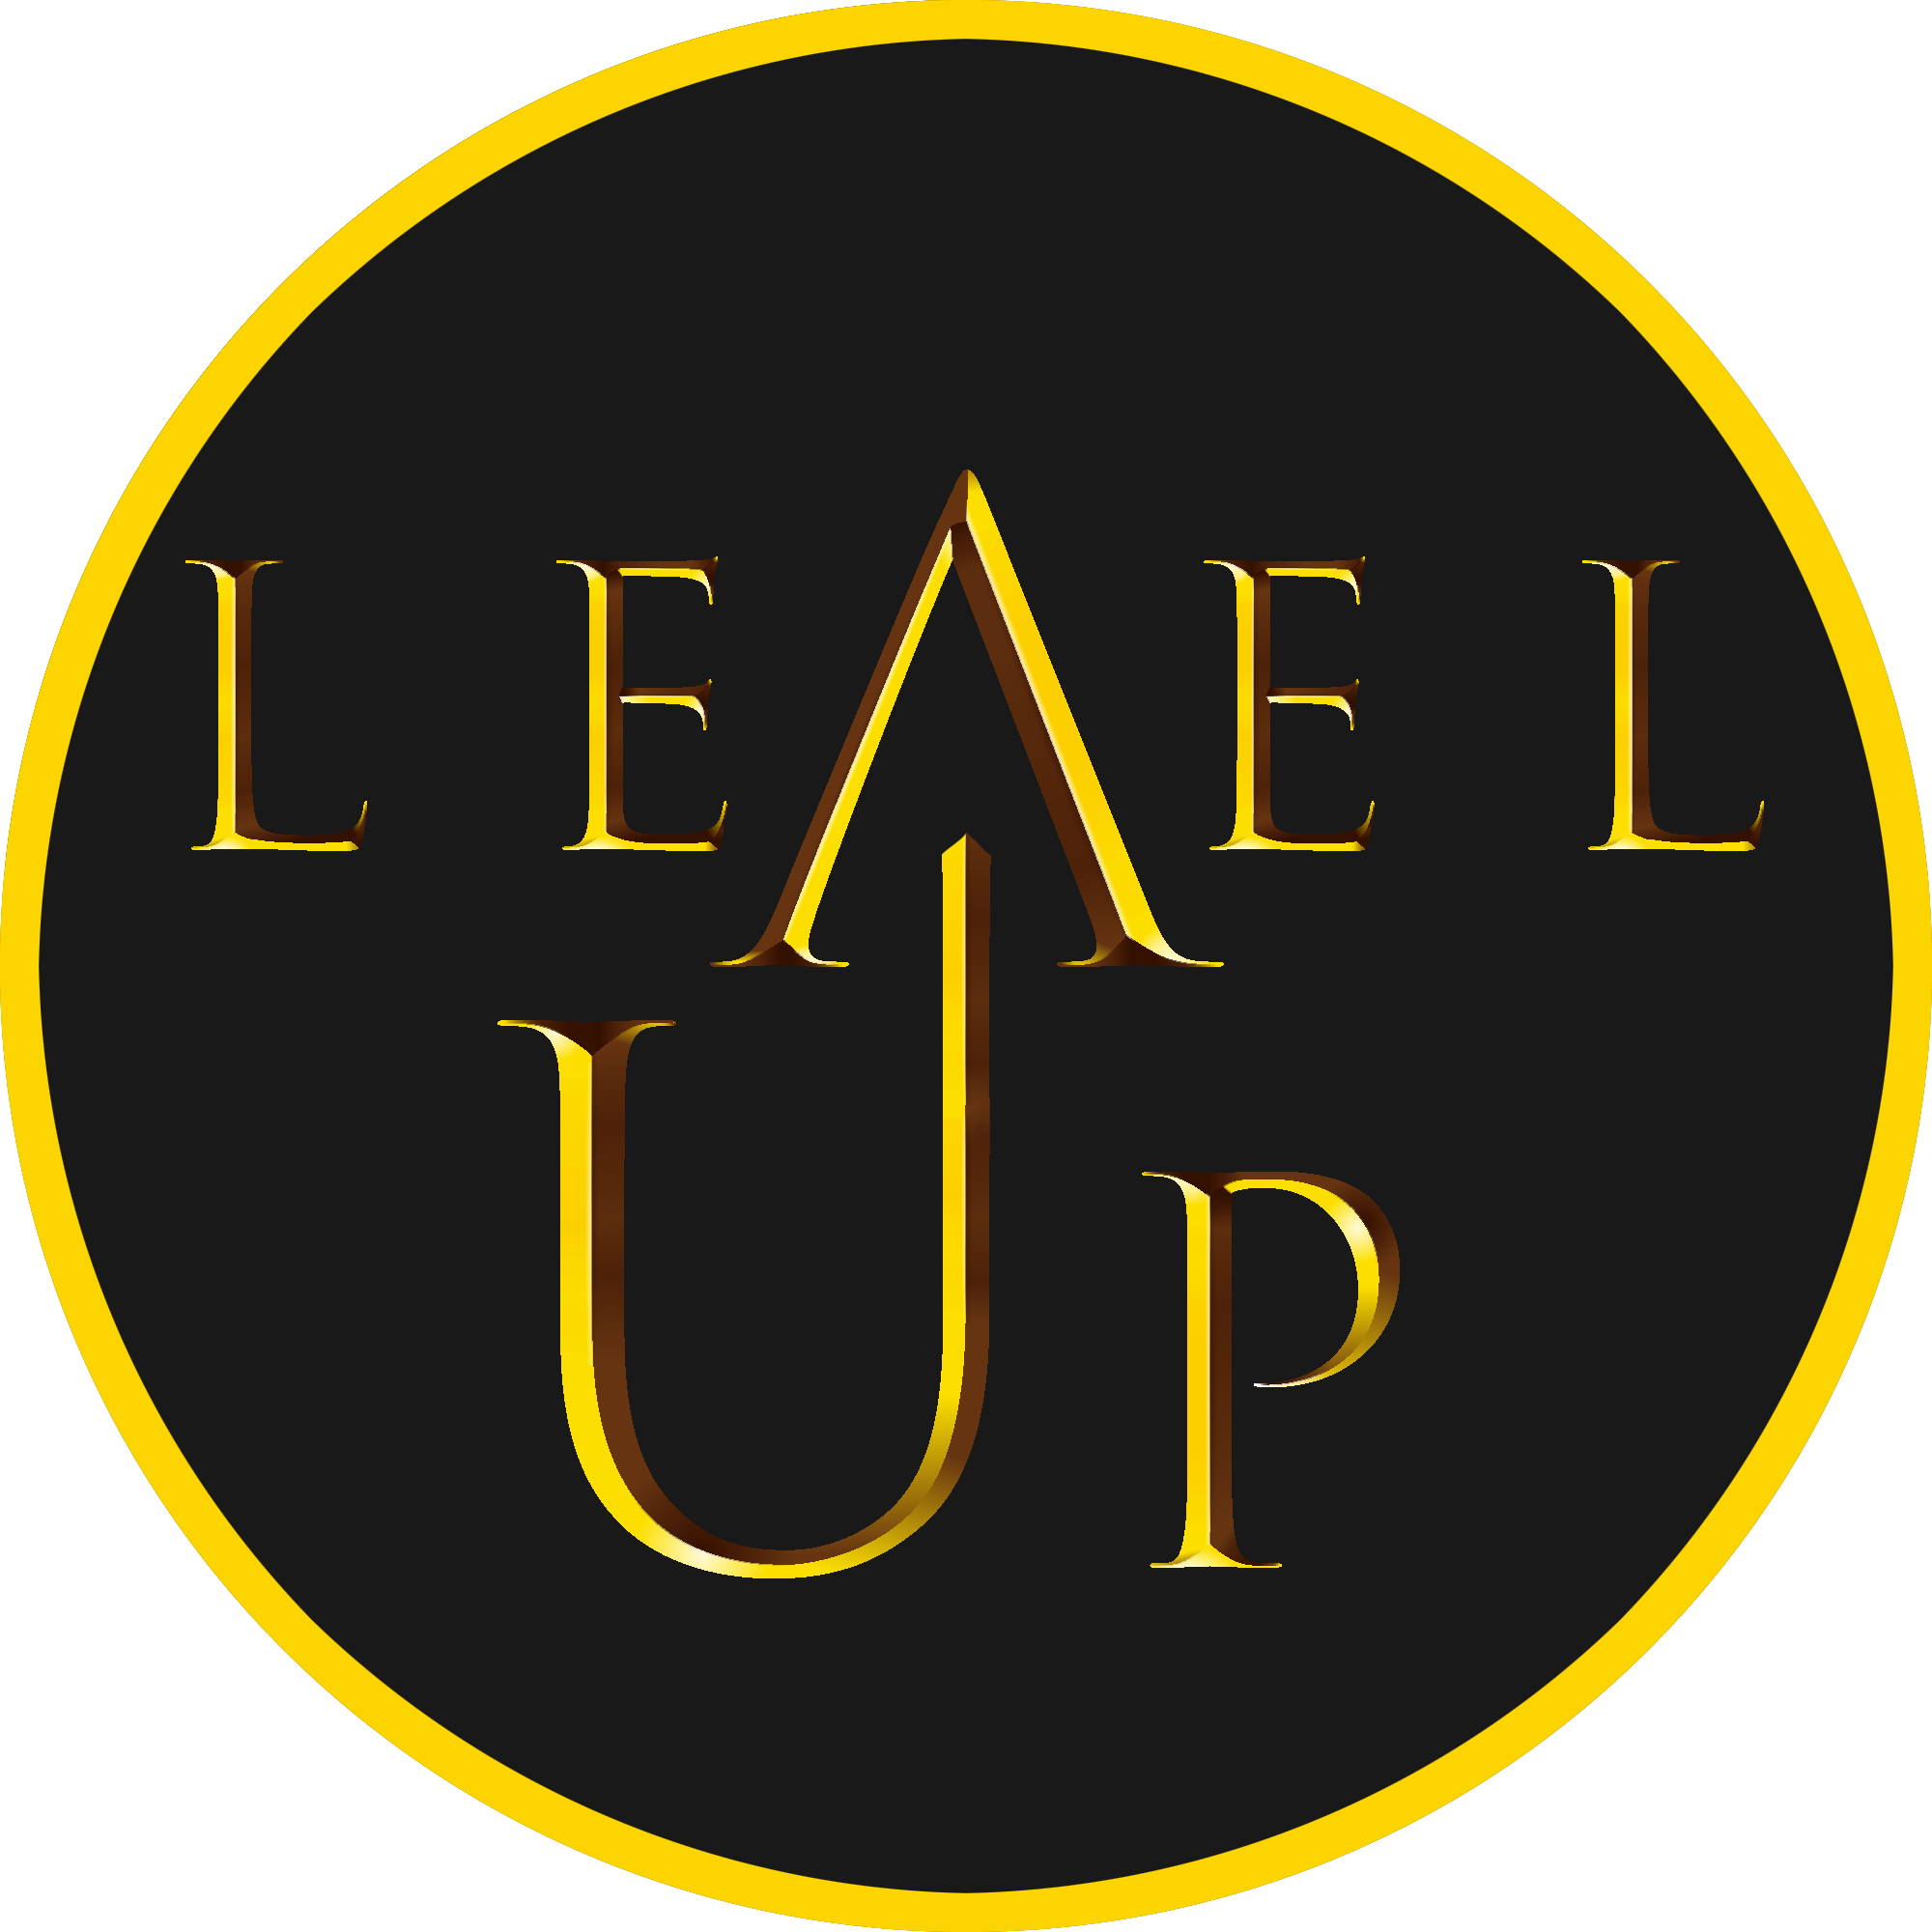 level up logo